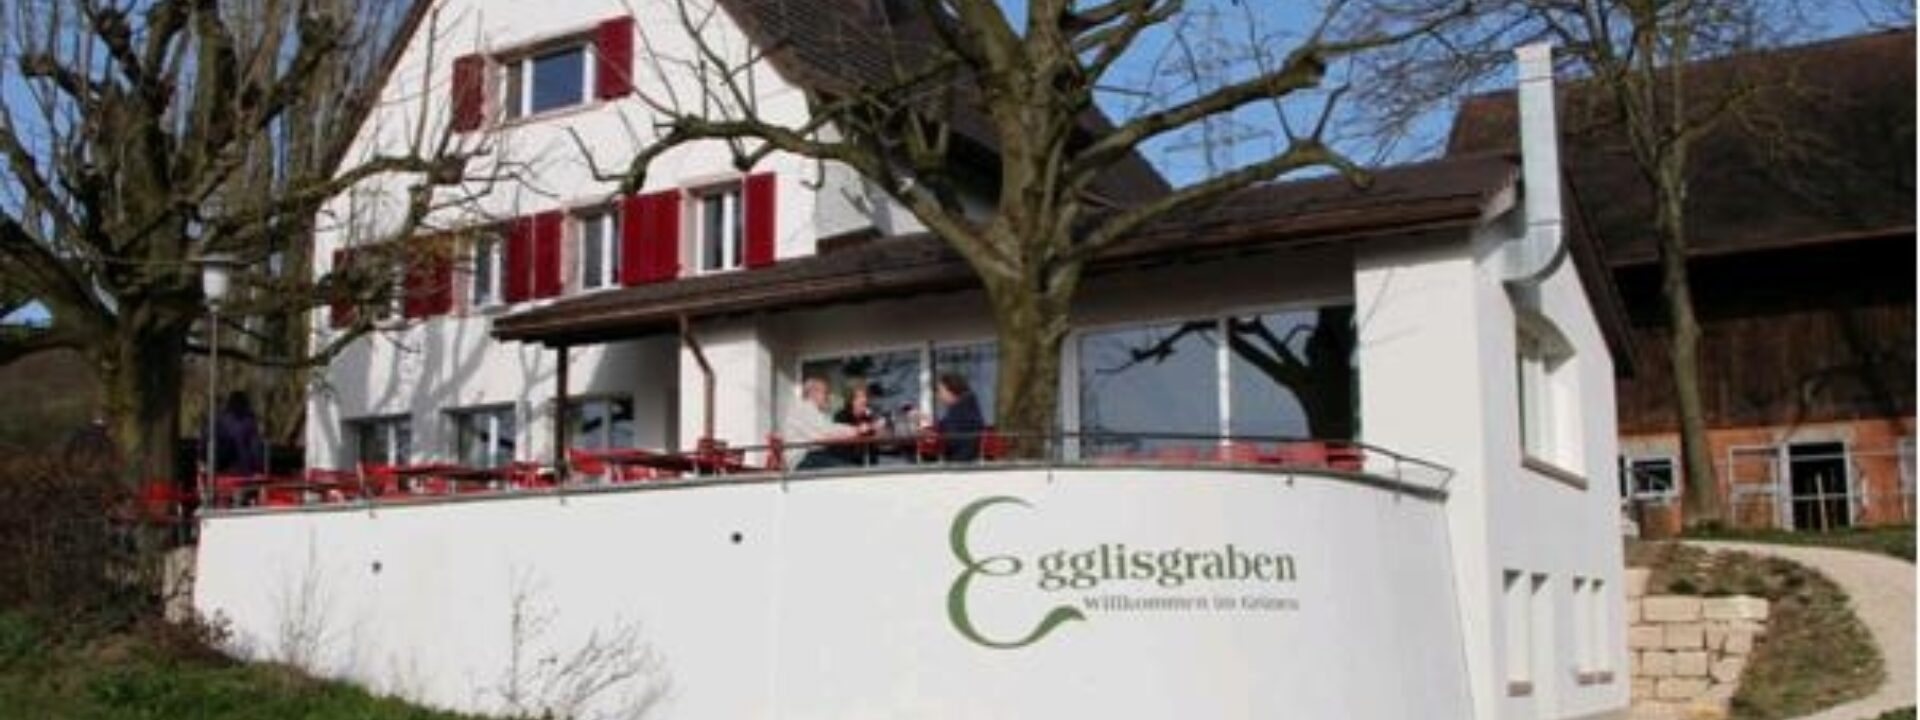 Restaurant Egglisgraben